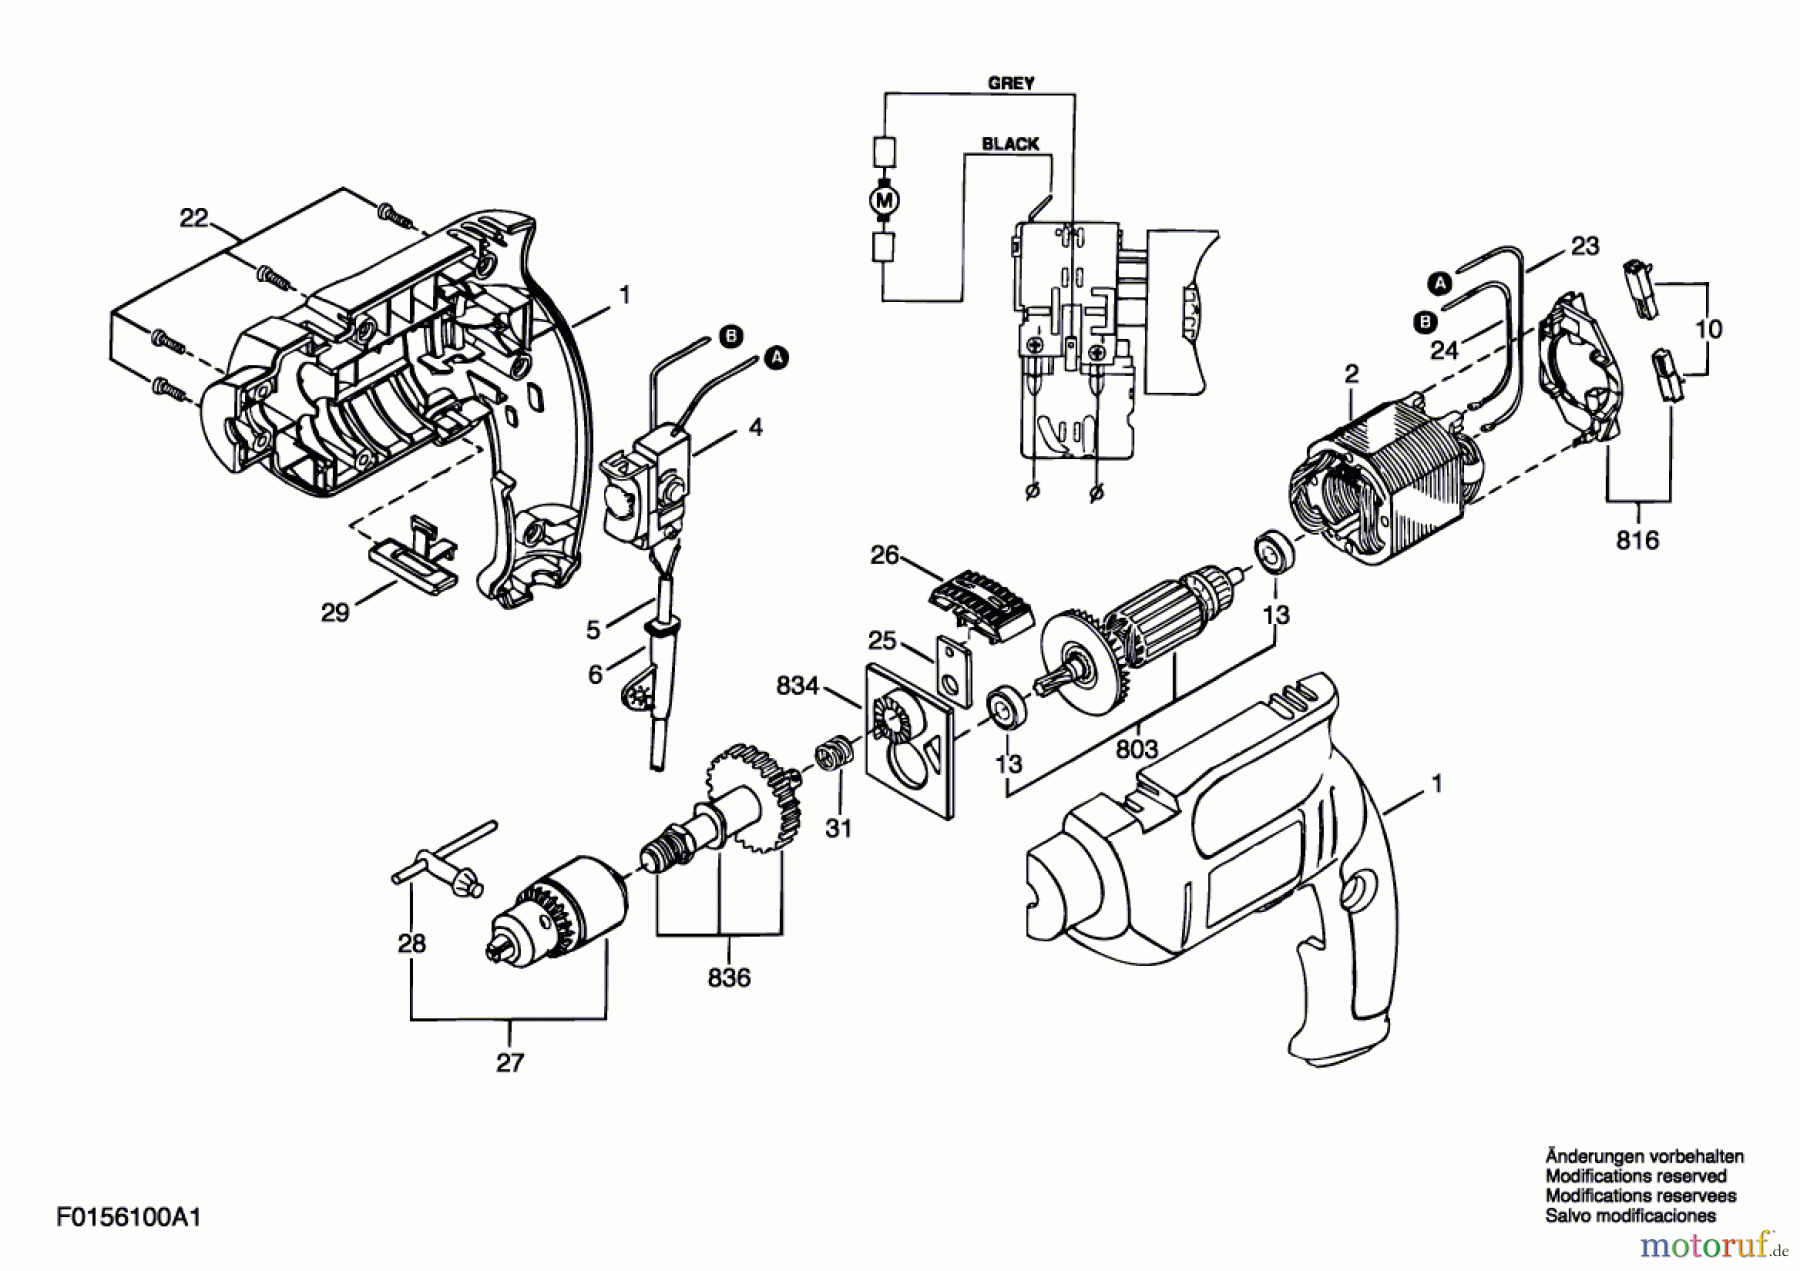  Bosch Werkzeug Ratsche 6100 Seite 1